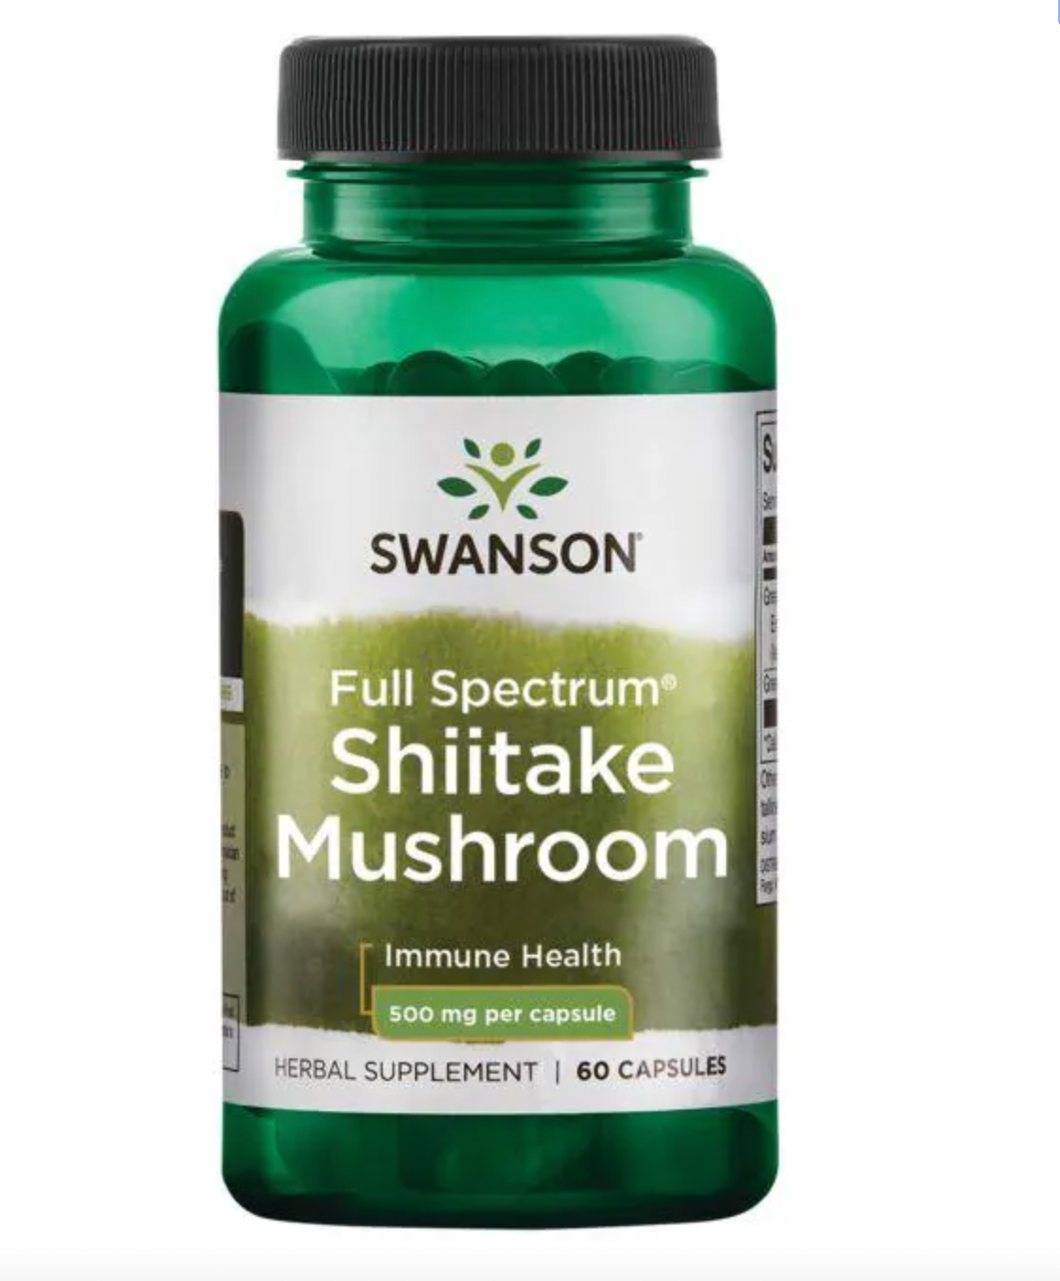 Full Spectrum Shiitake Mushroom